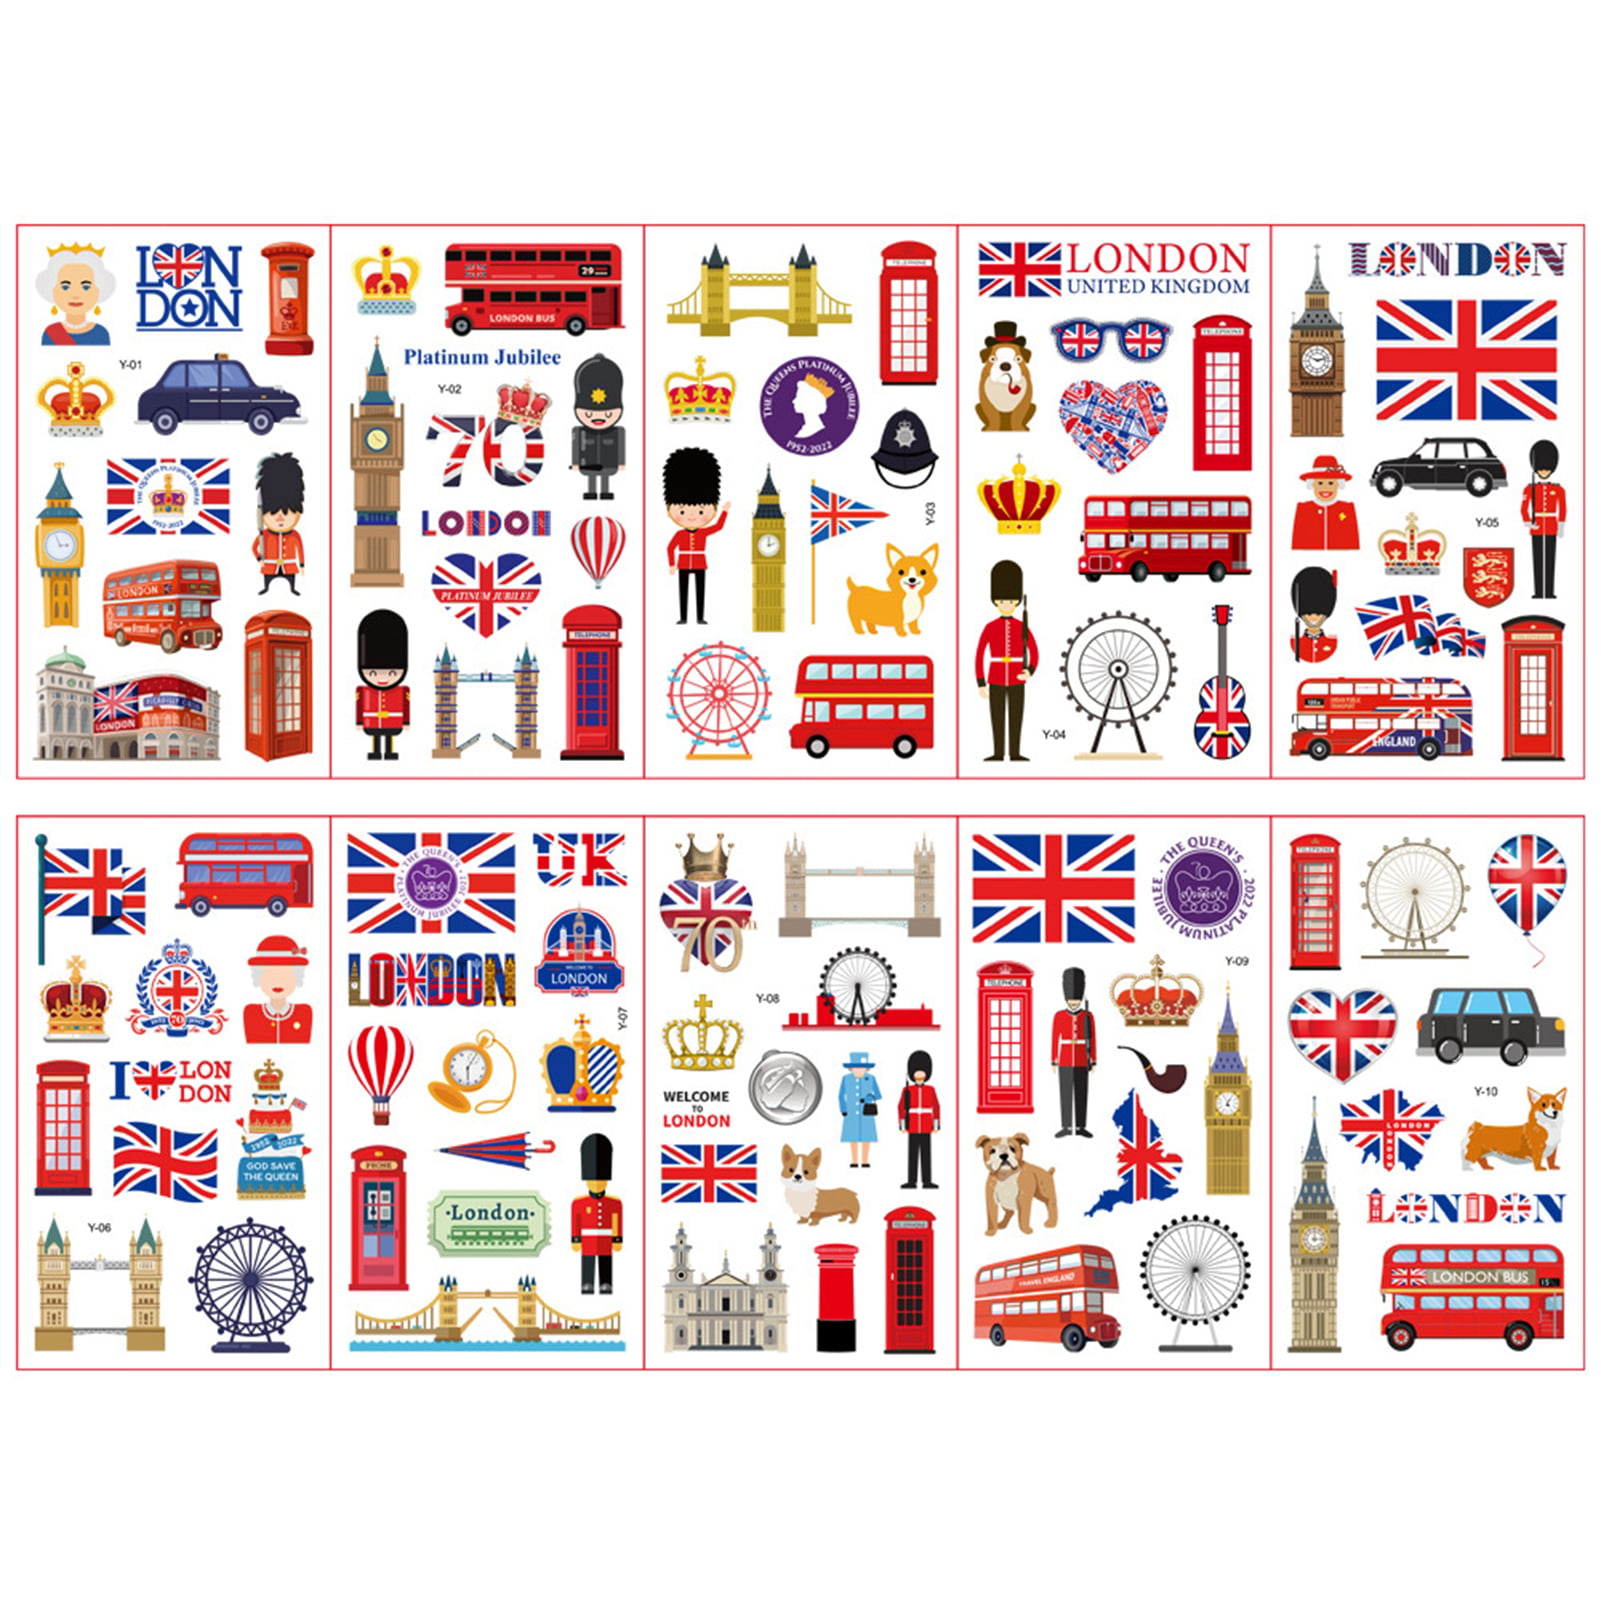 London Rock Music United Kingdom Flag Car Bumper Sticker Decal 5" x 5" 